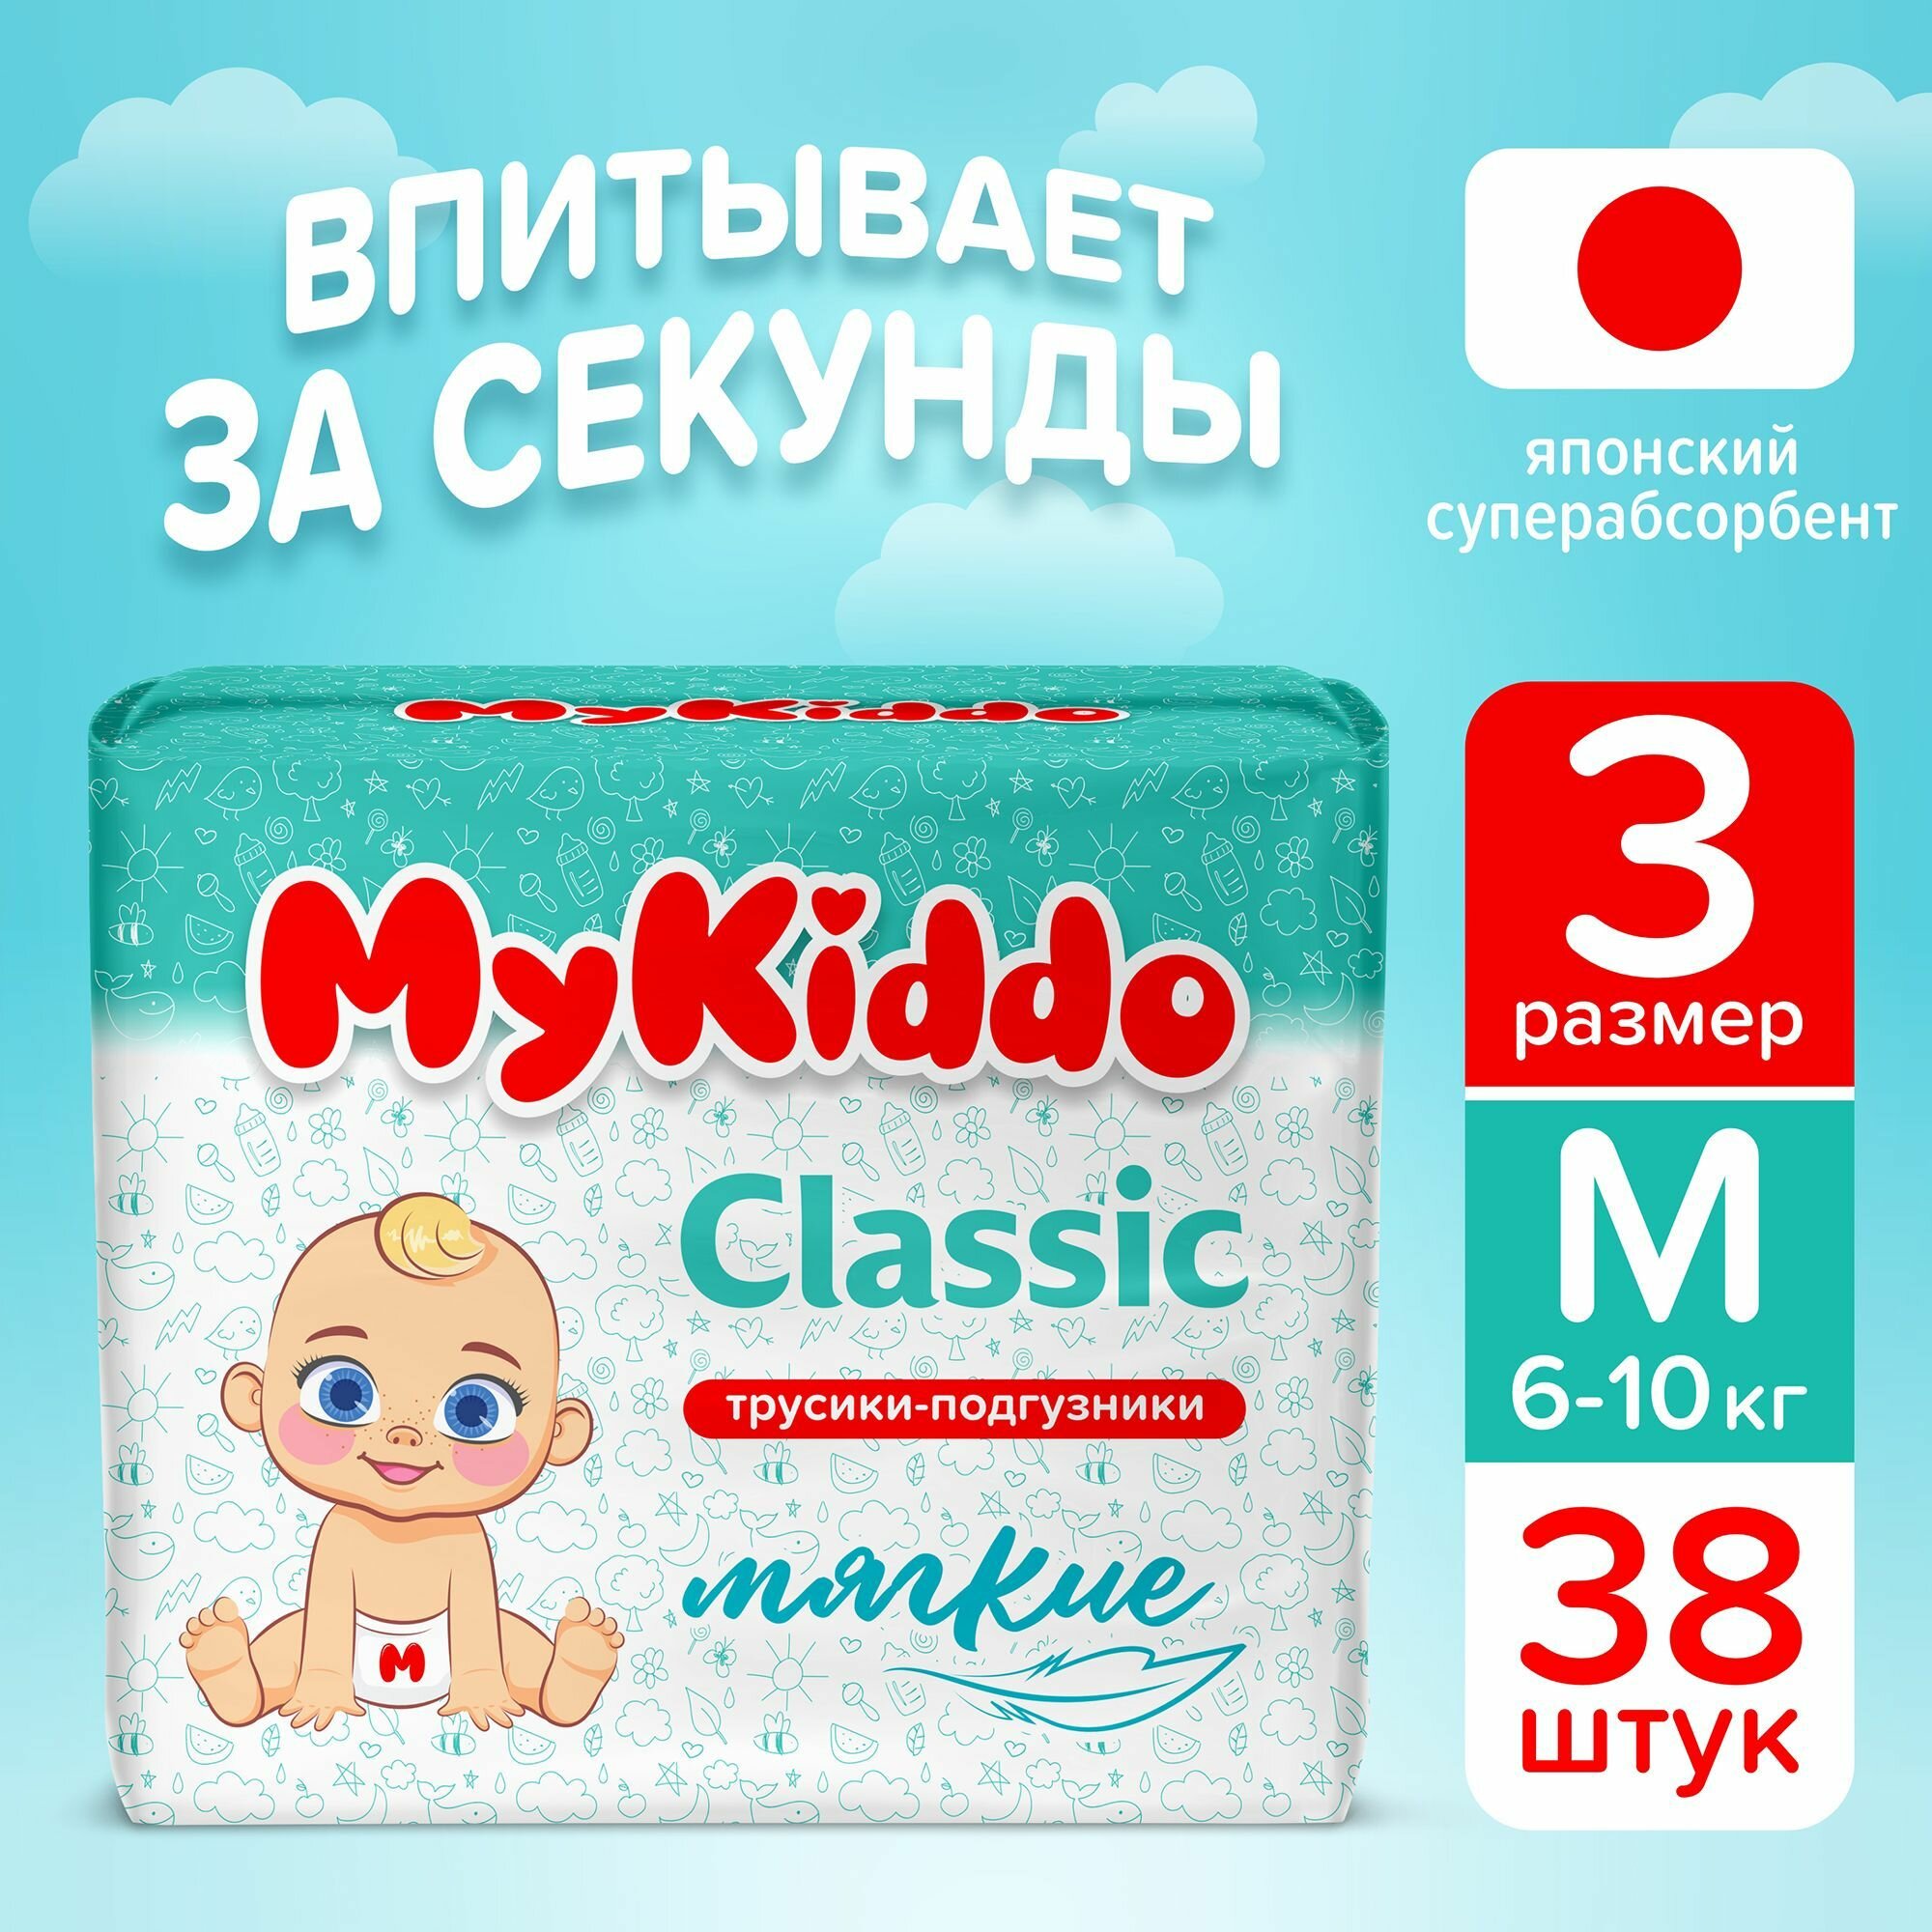 Подгузники трусики детские MyKiddo Classic размер 3 M, для детей весом 6-10 кг, в упаковке 38 шт.